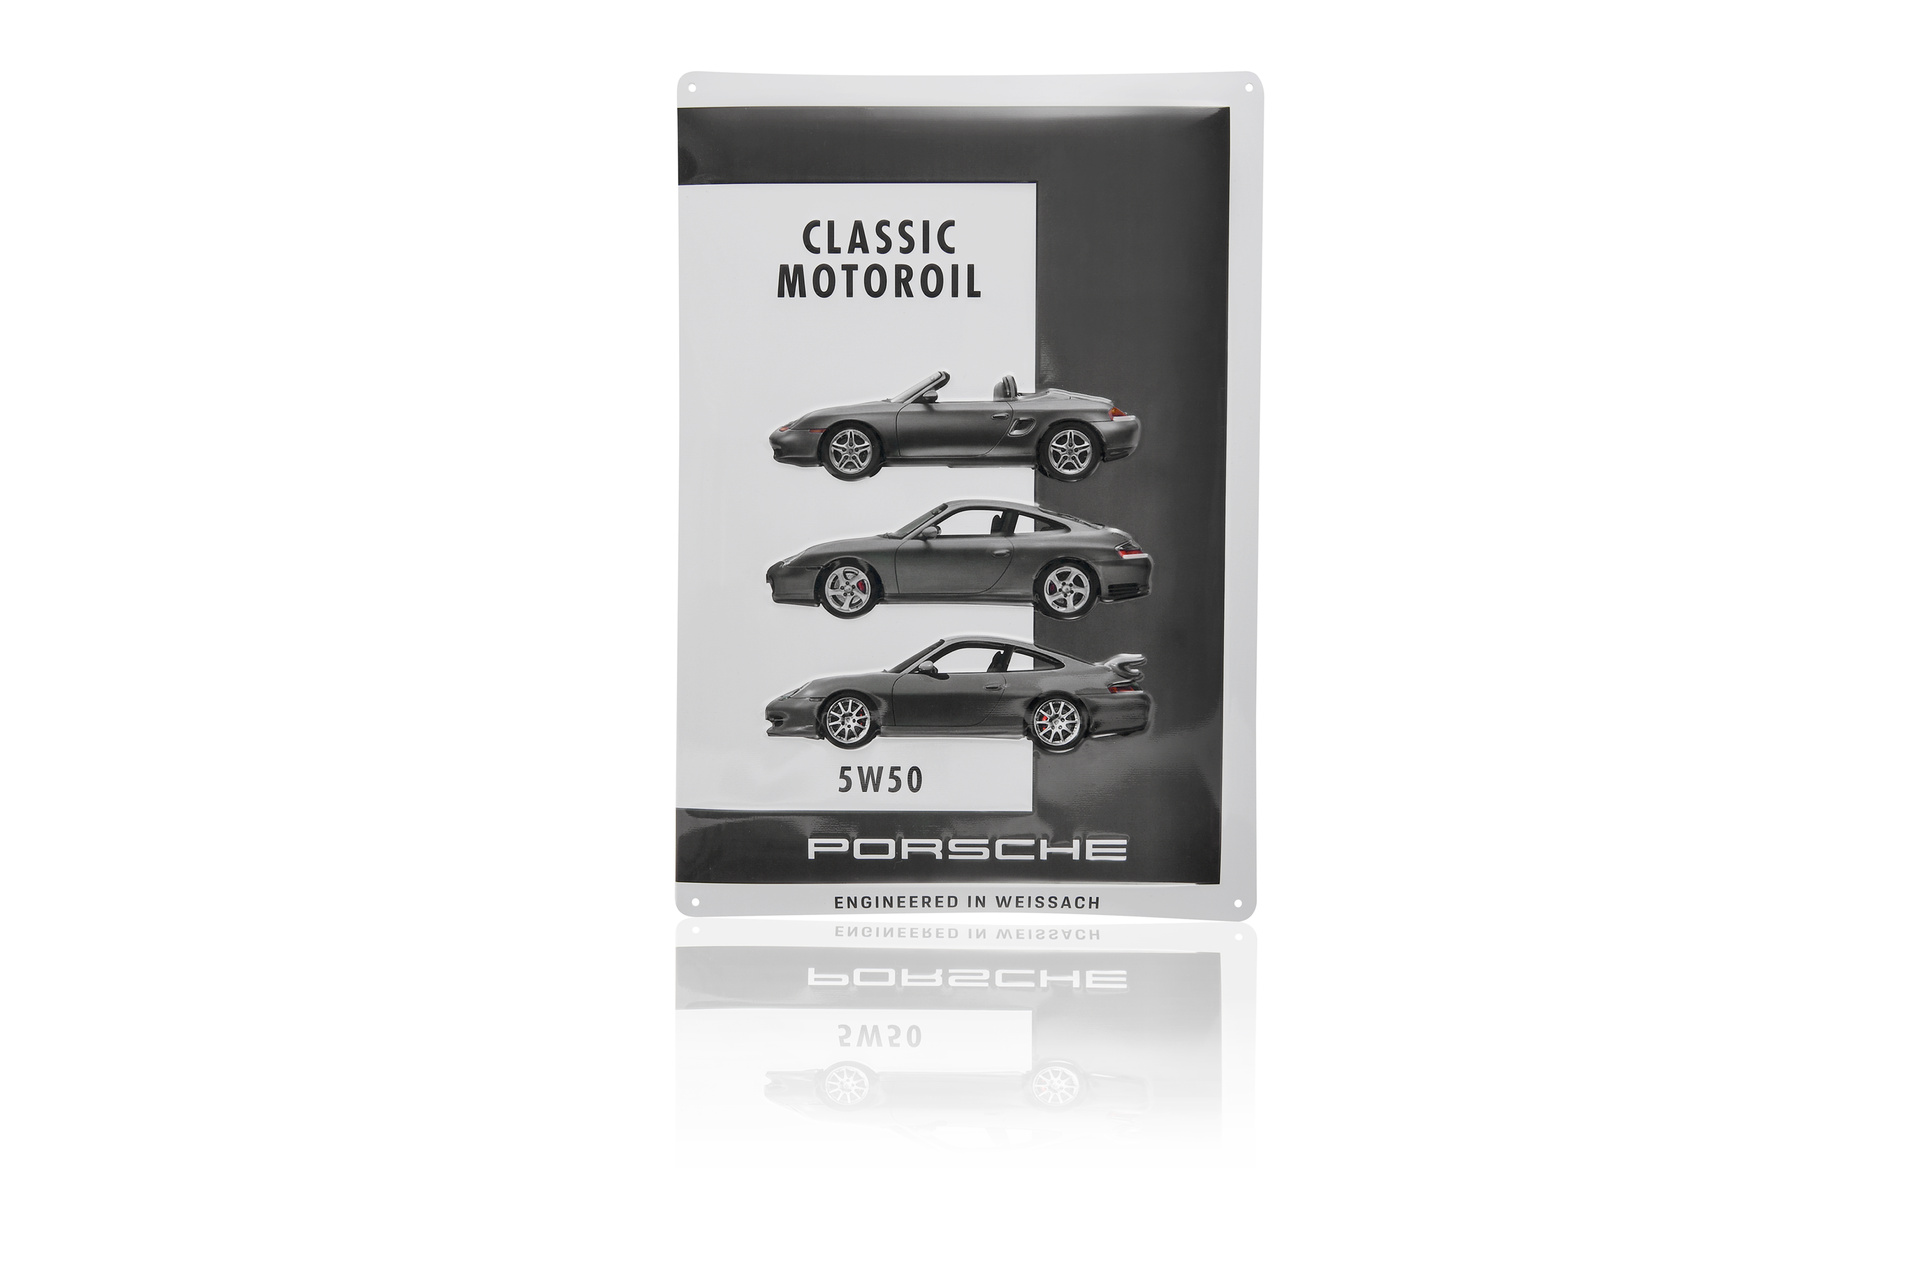 Porsche PCG04300550 - Plaque décorative Porsche Classic Motoroil 5W50